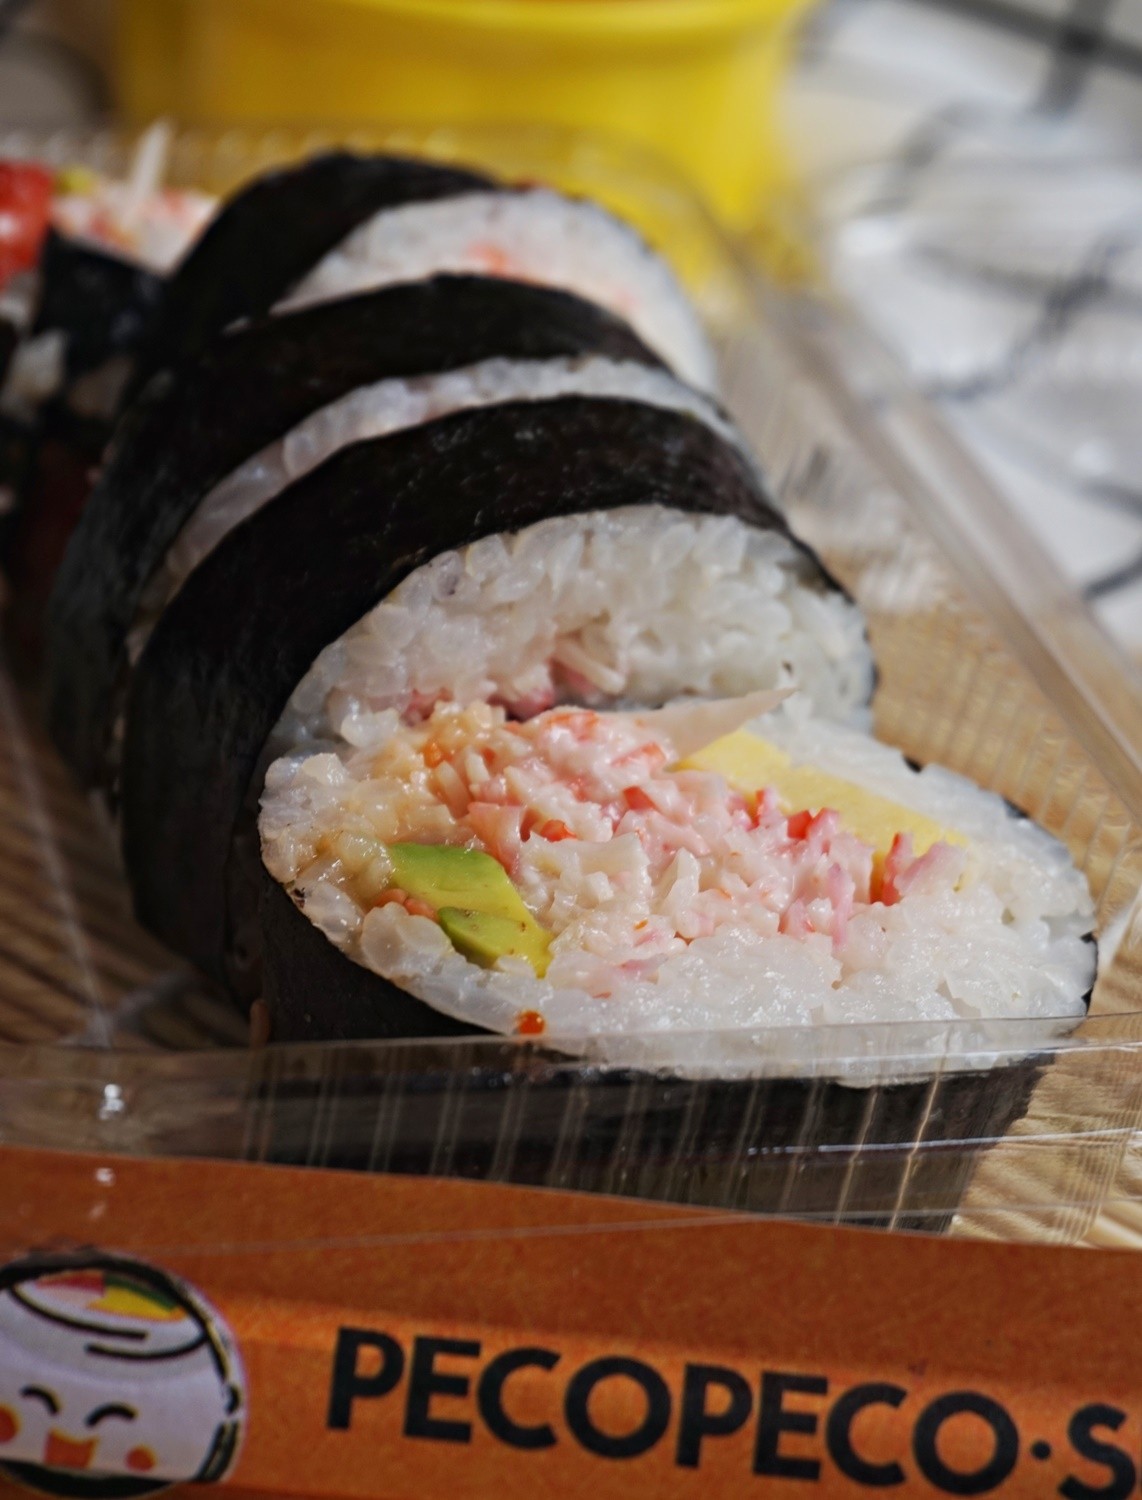 Tempat Rekomendasi Makanan Jepang Enak Di Surabaya, Peco-Peco Sushi